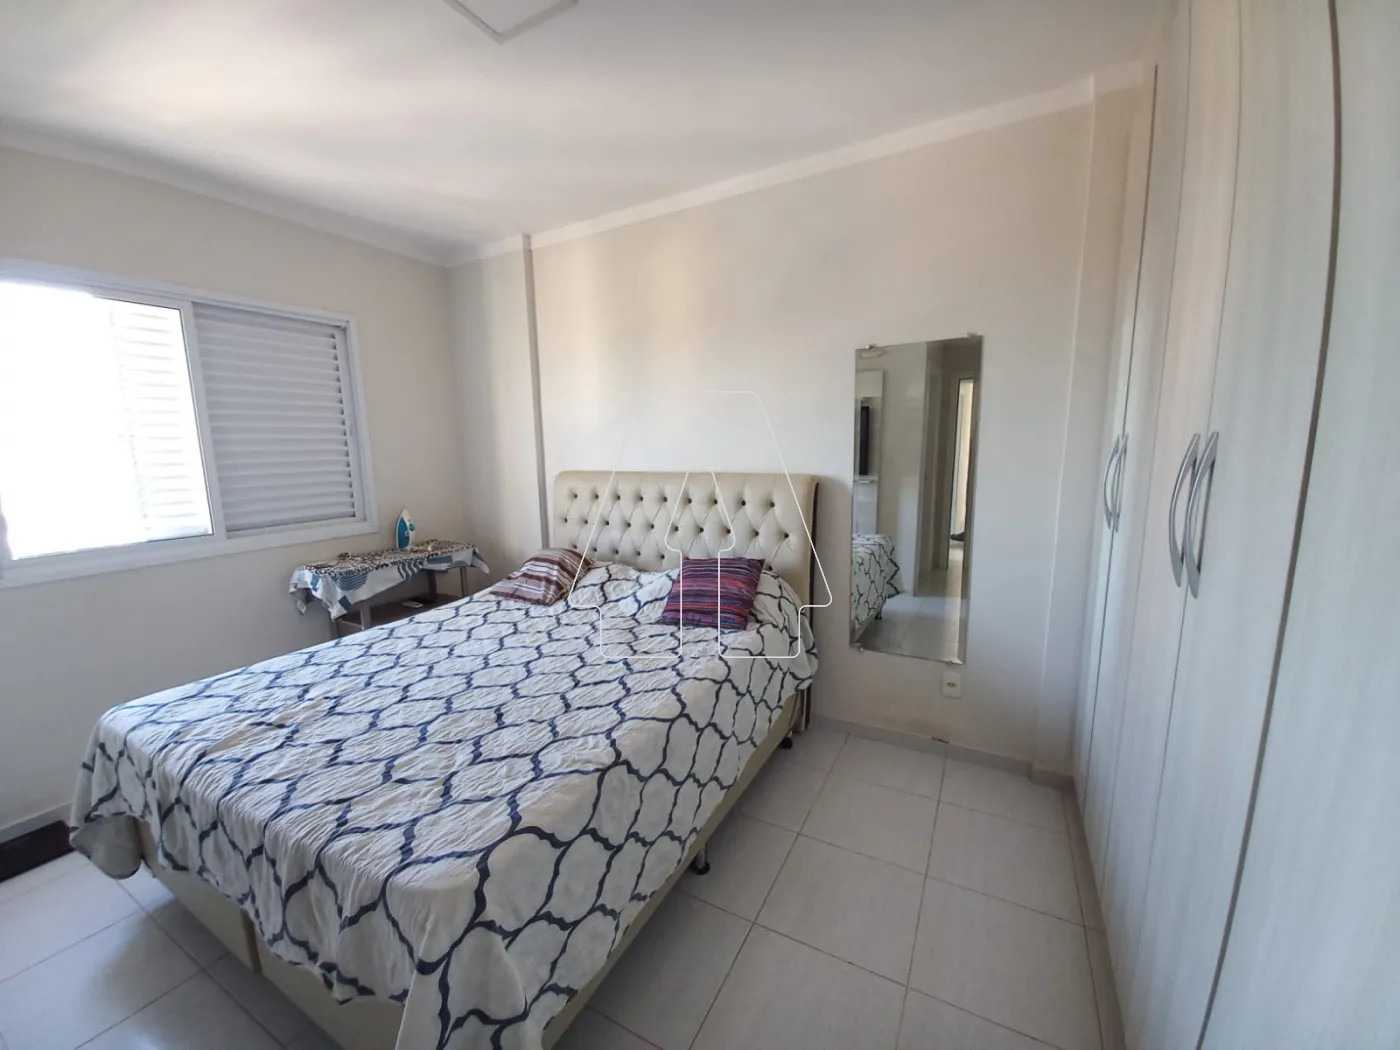 Comprar Apartamento / Padrão em Araçatuba R$ 380.000,00 - Foto 17